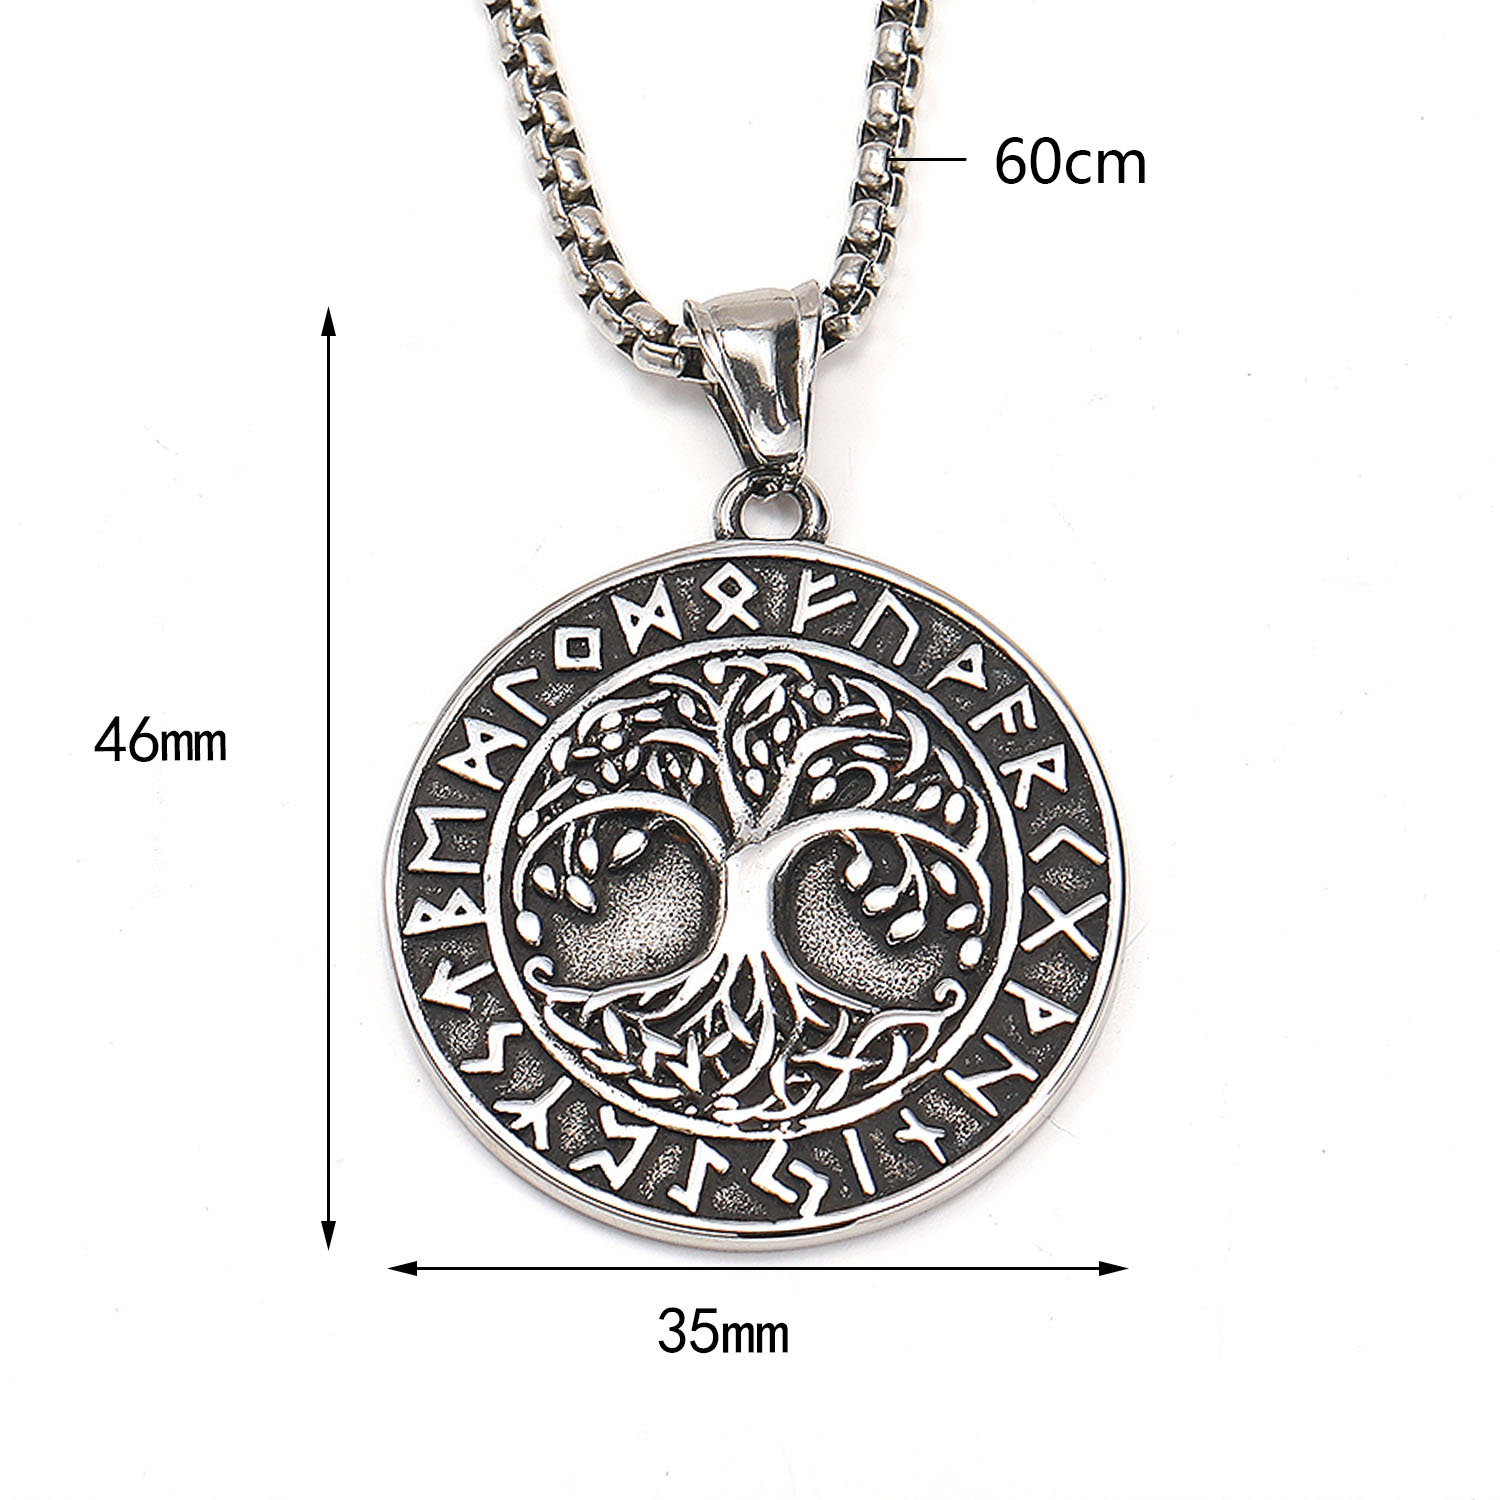 2:Necklace 60cm